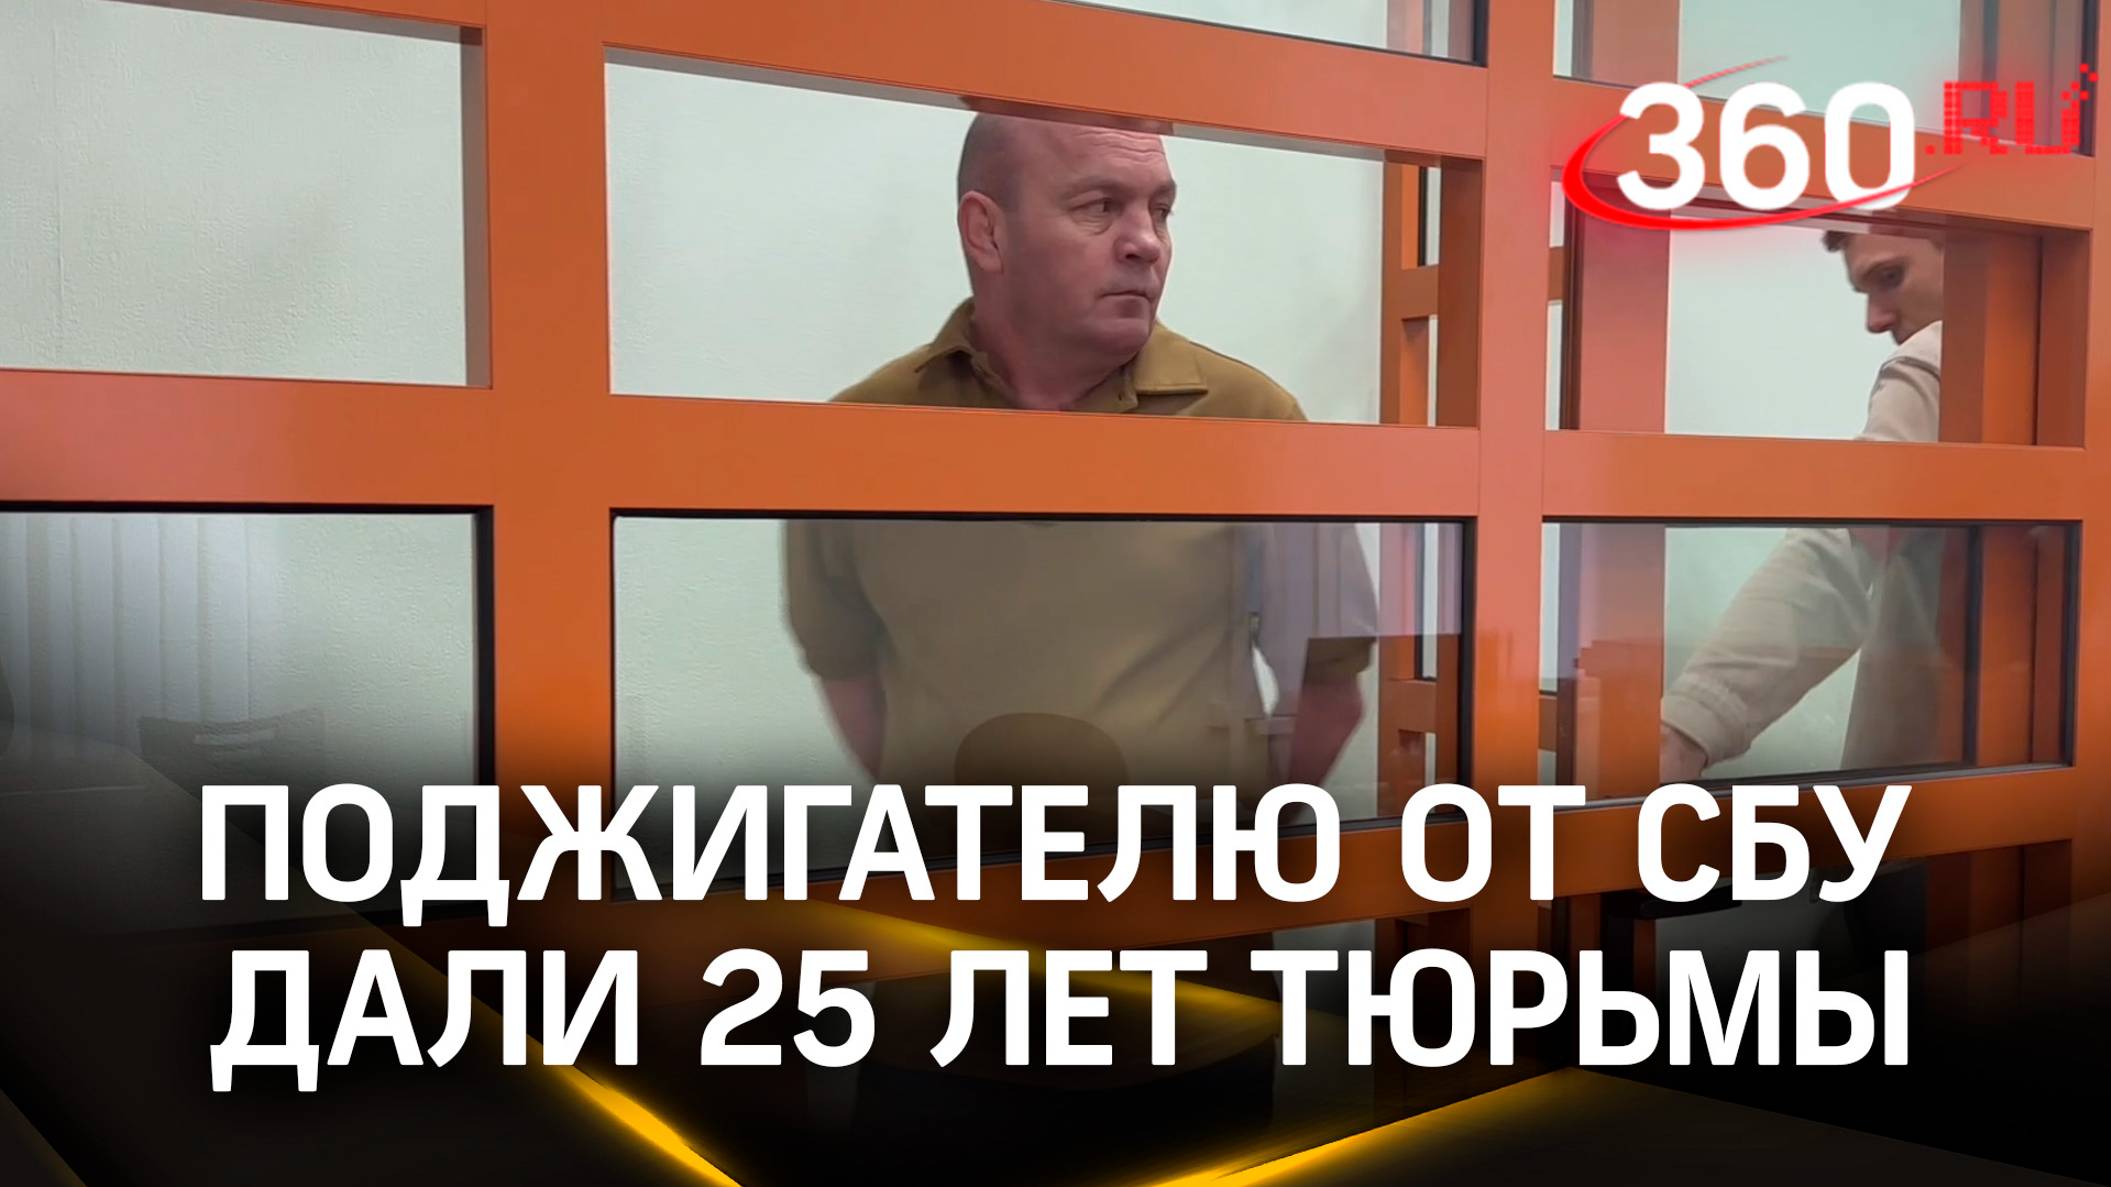 Суд приговорил к 25 годам колонии гражданина Украины Сергея Кармазина